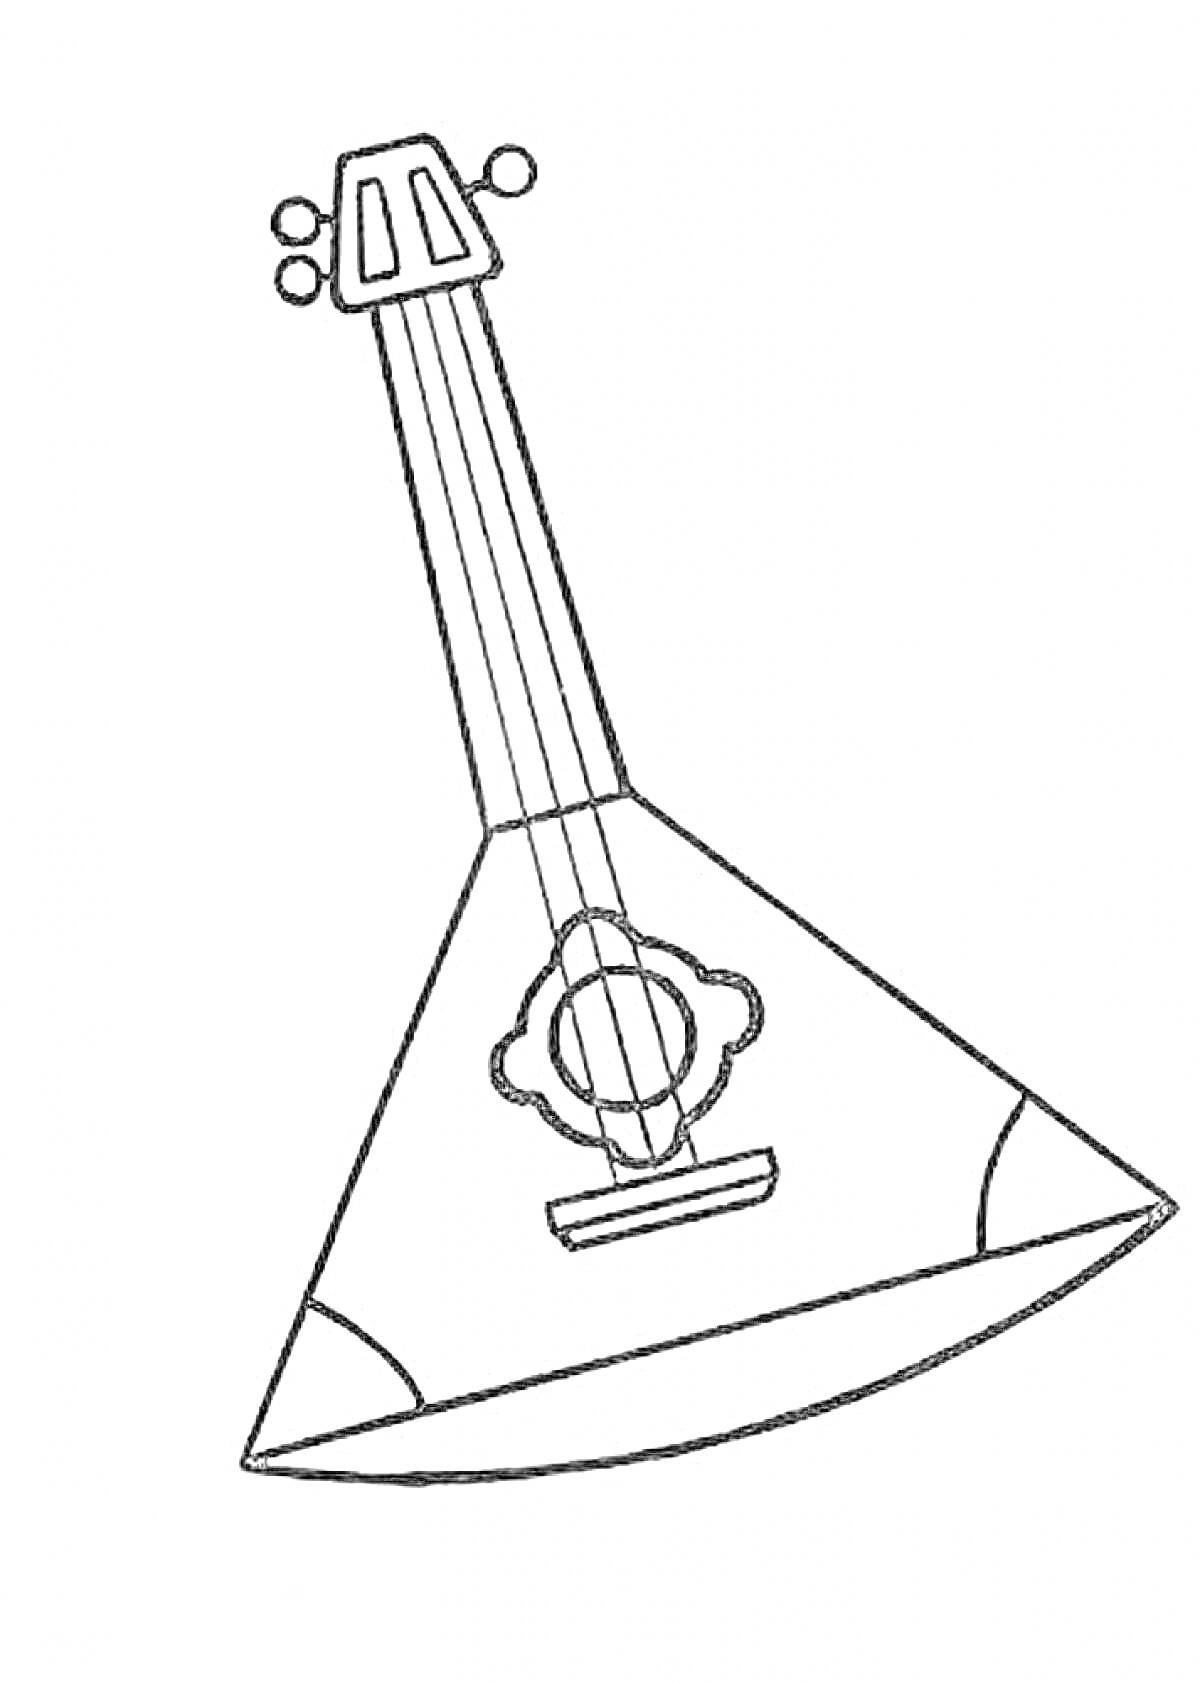 Балалайка с тремя колками, струнами и декоративным узором